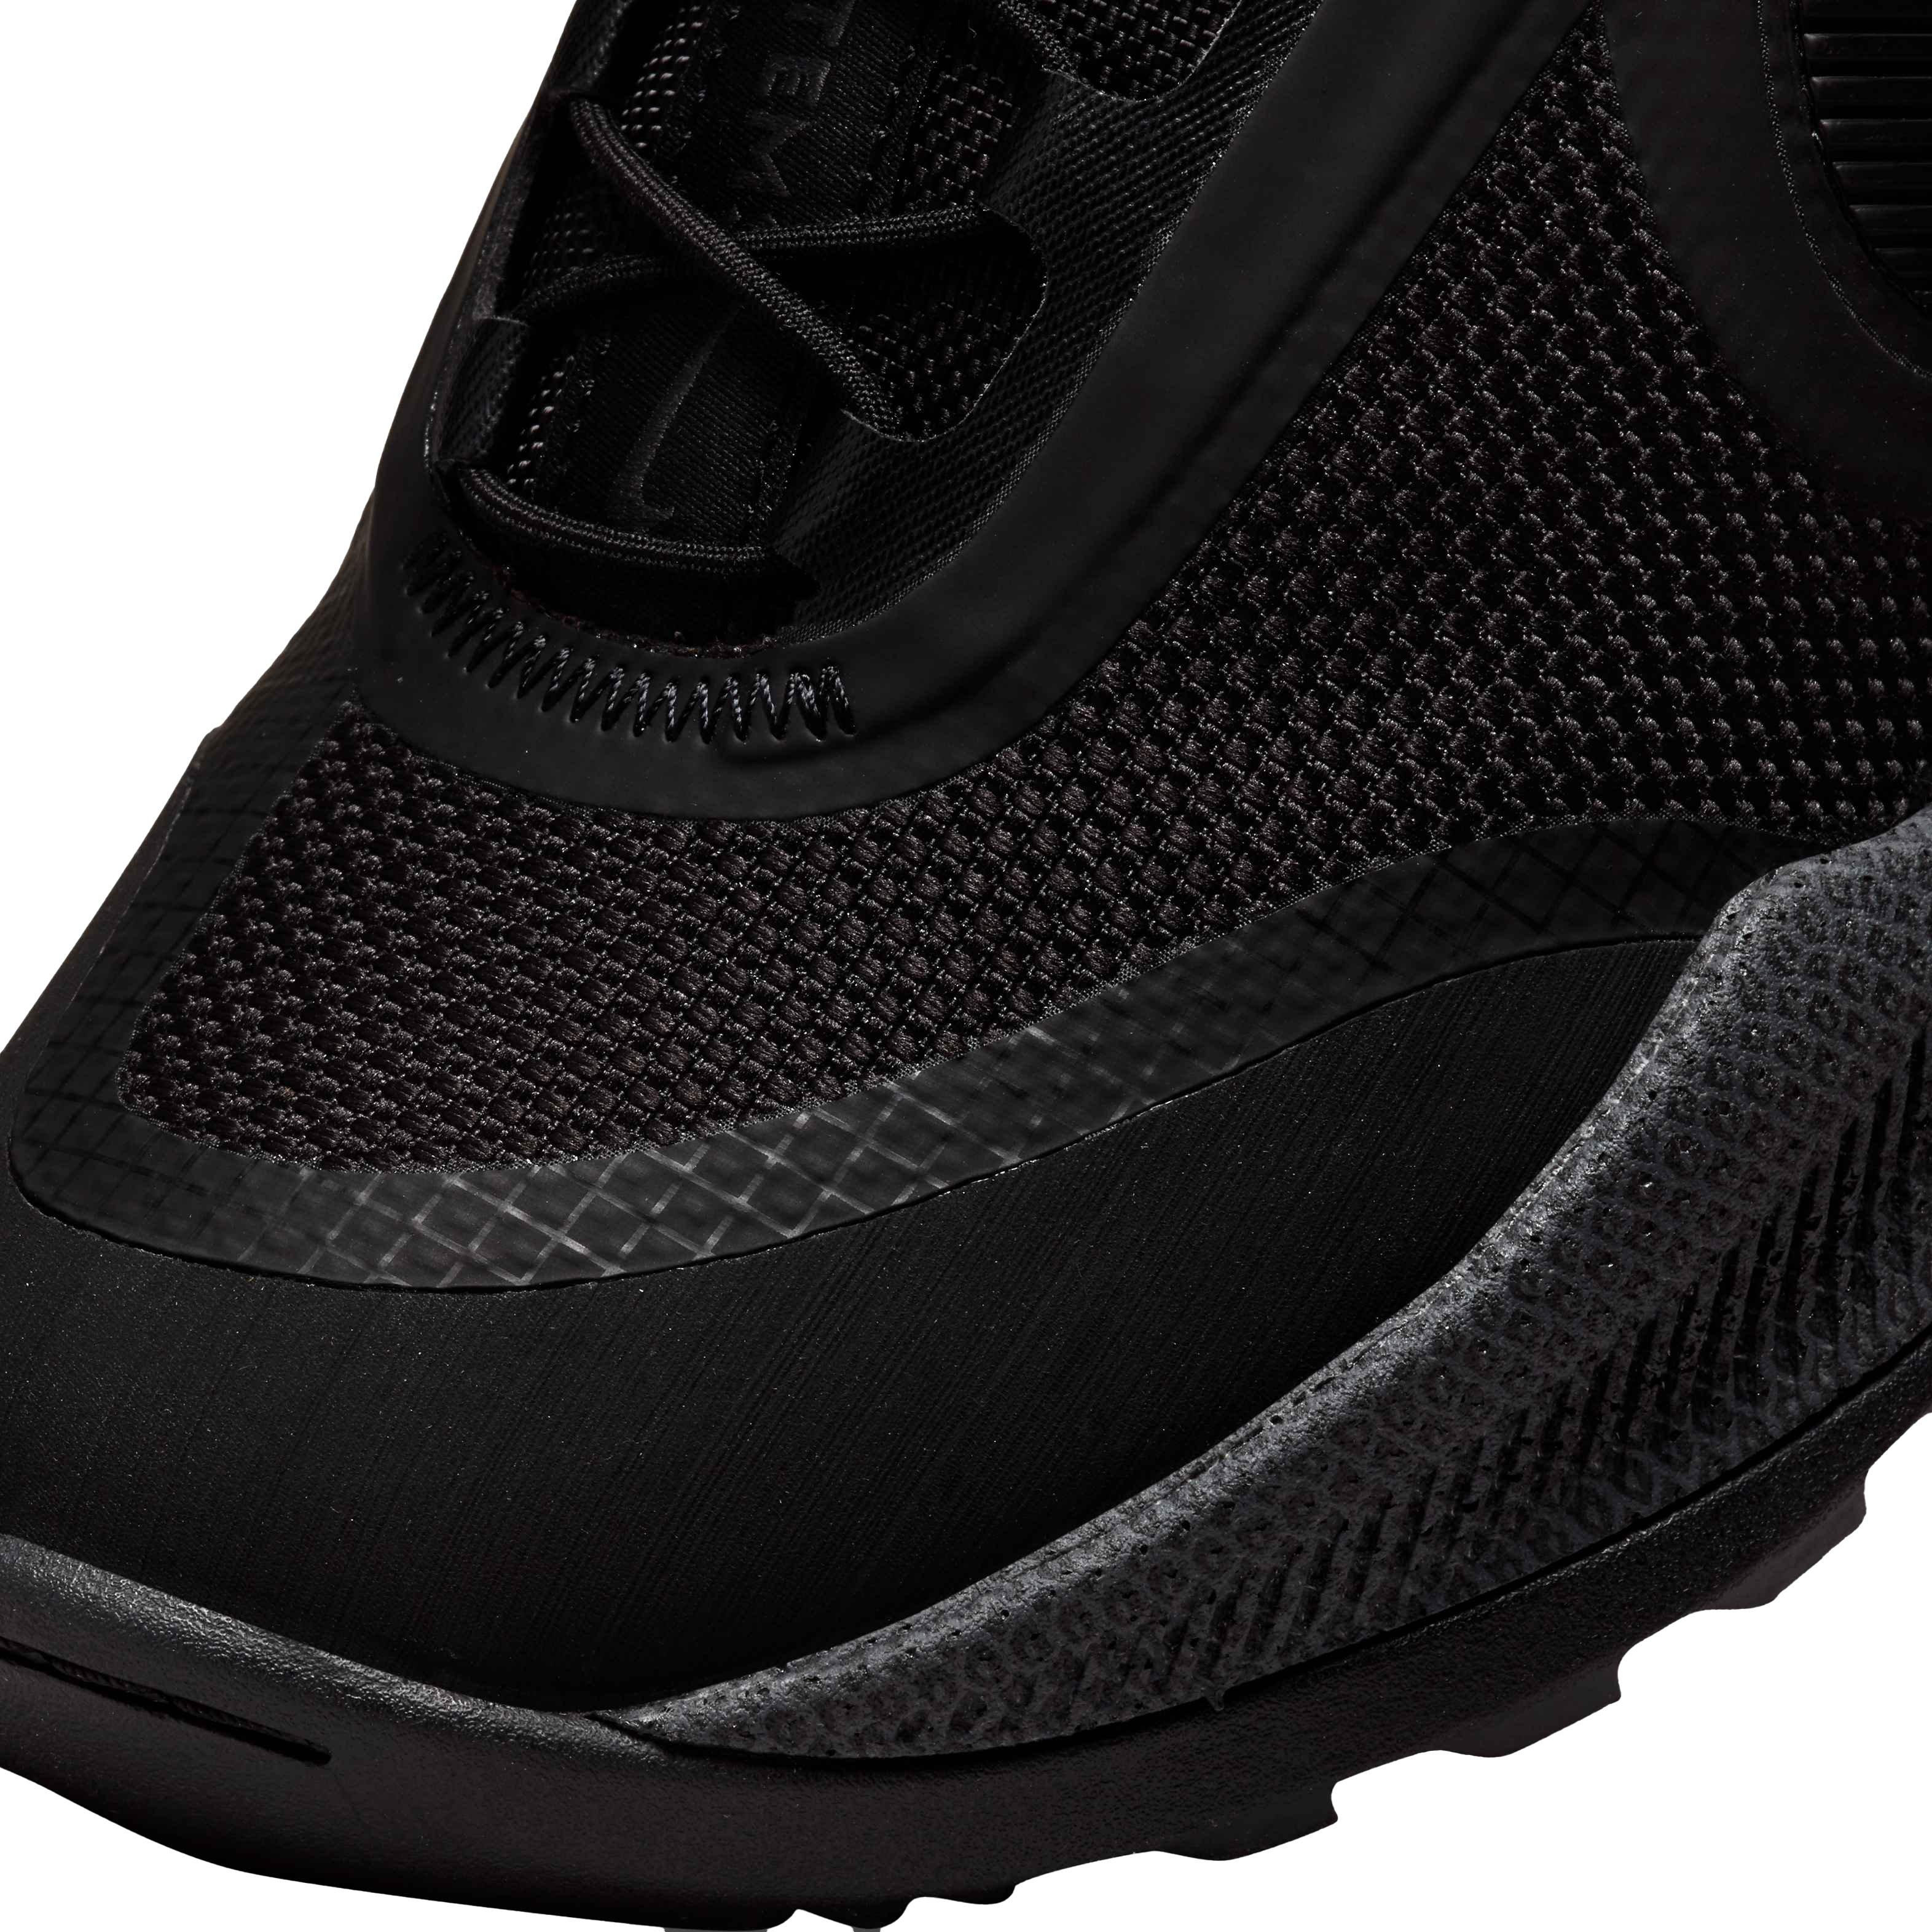 Nike React SFB Carbon Men’s Elite Outdoor Shoes